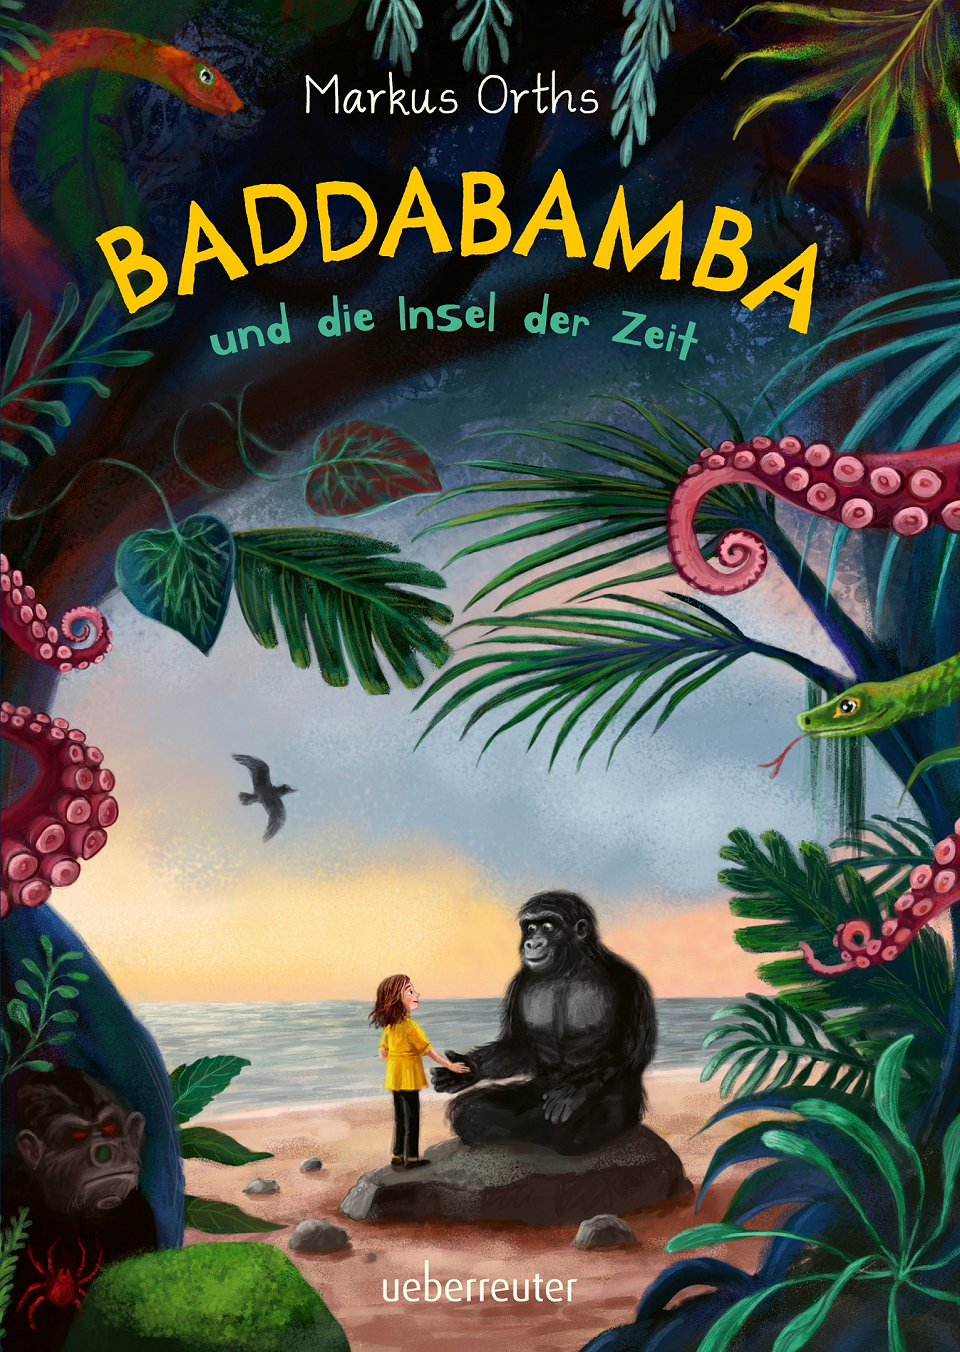 Titelseite des Buches Baddabamba von Markus Orths